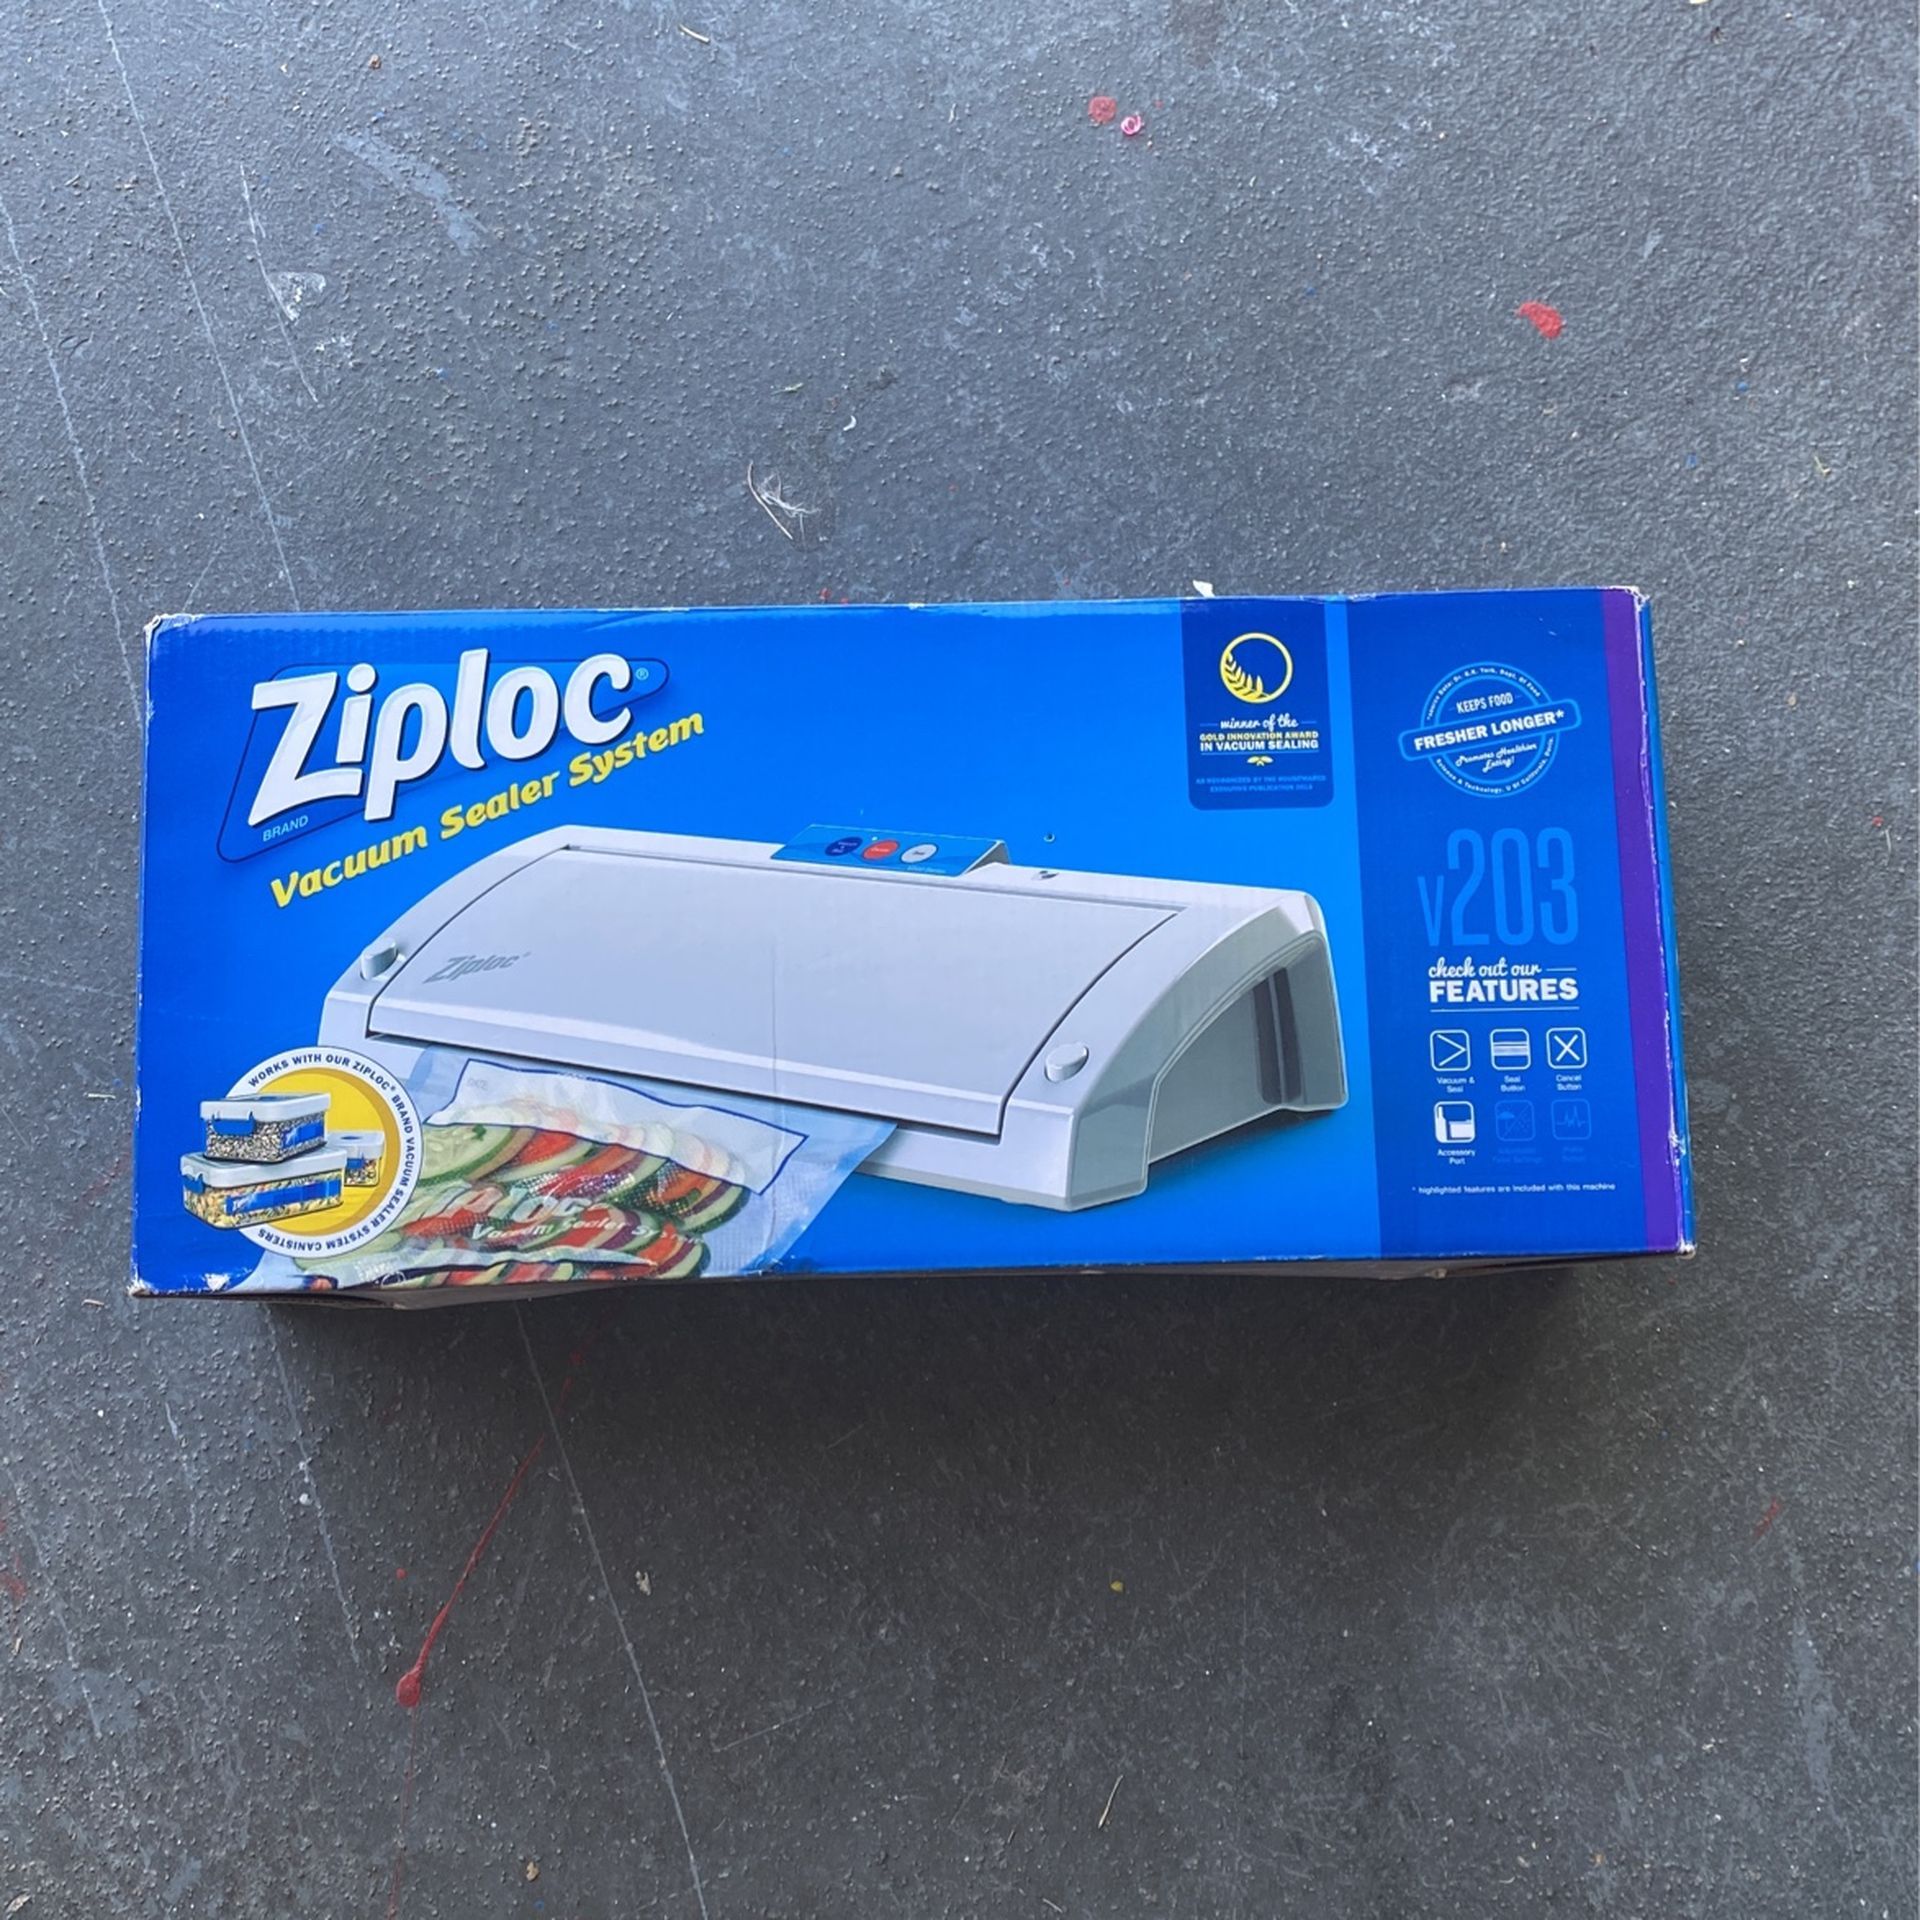 Ziploc Vacuum Sealer System for Sale in Stockton, CA - OfferUp